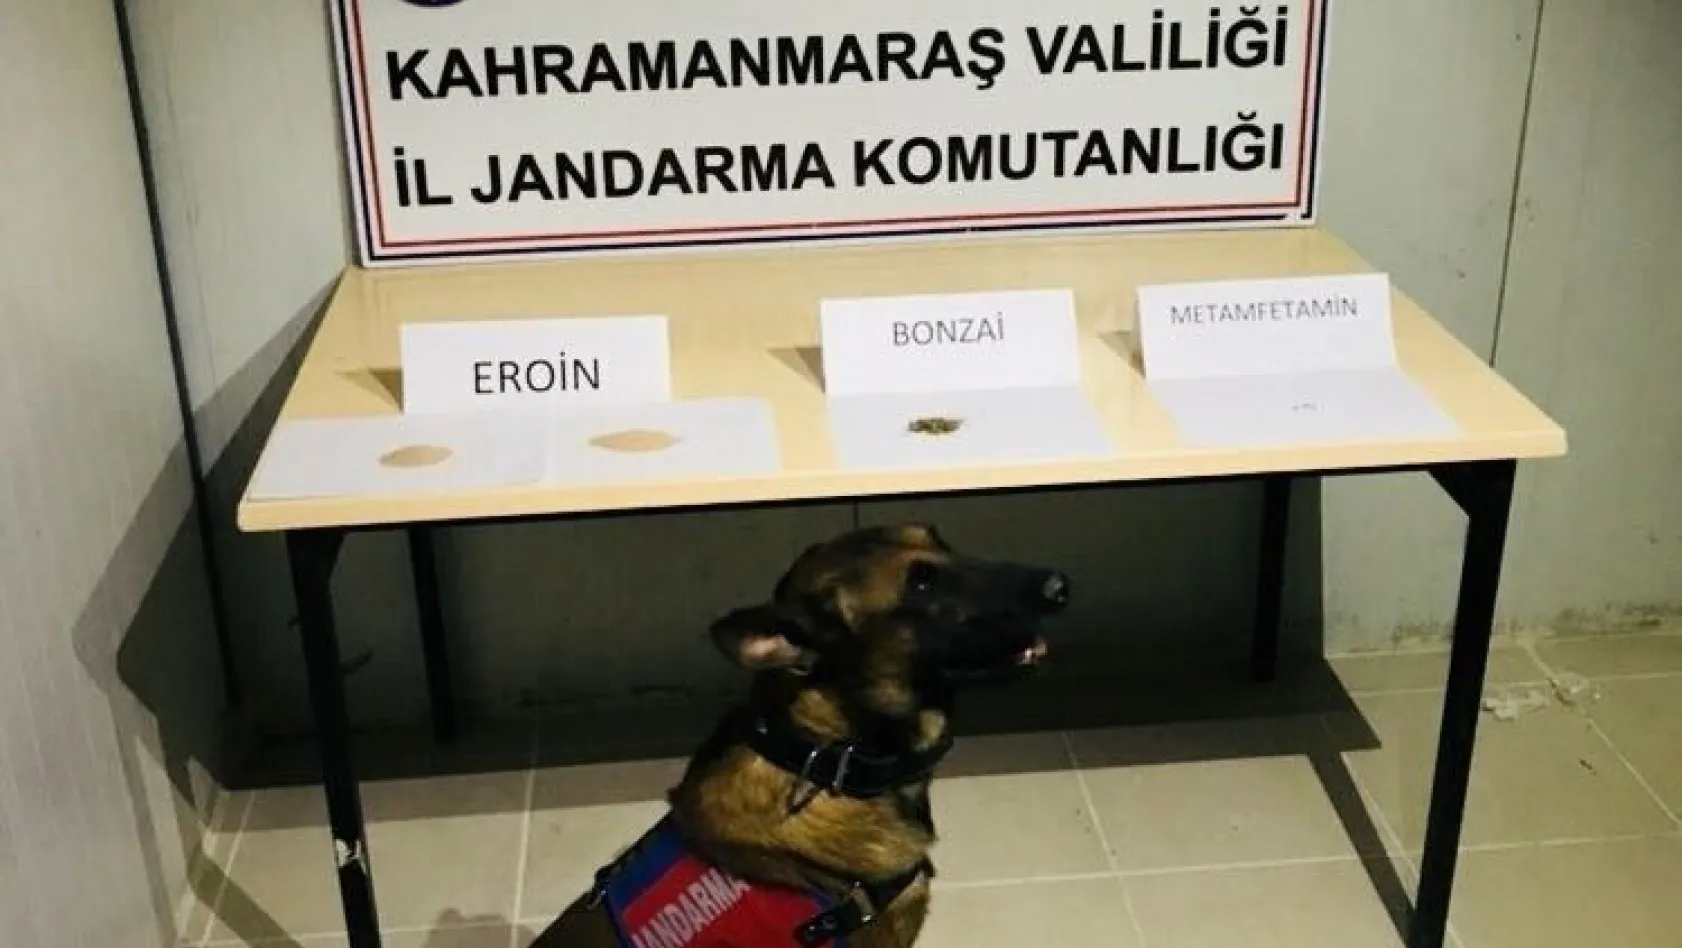 Kahramanmaraş'ta uyuşturucu operasyonu: 3 gözaltı
